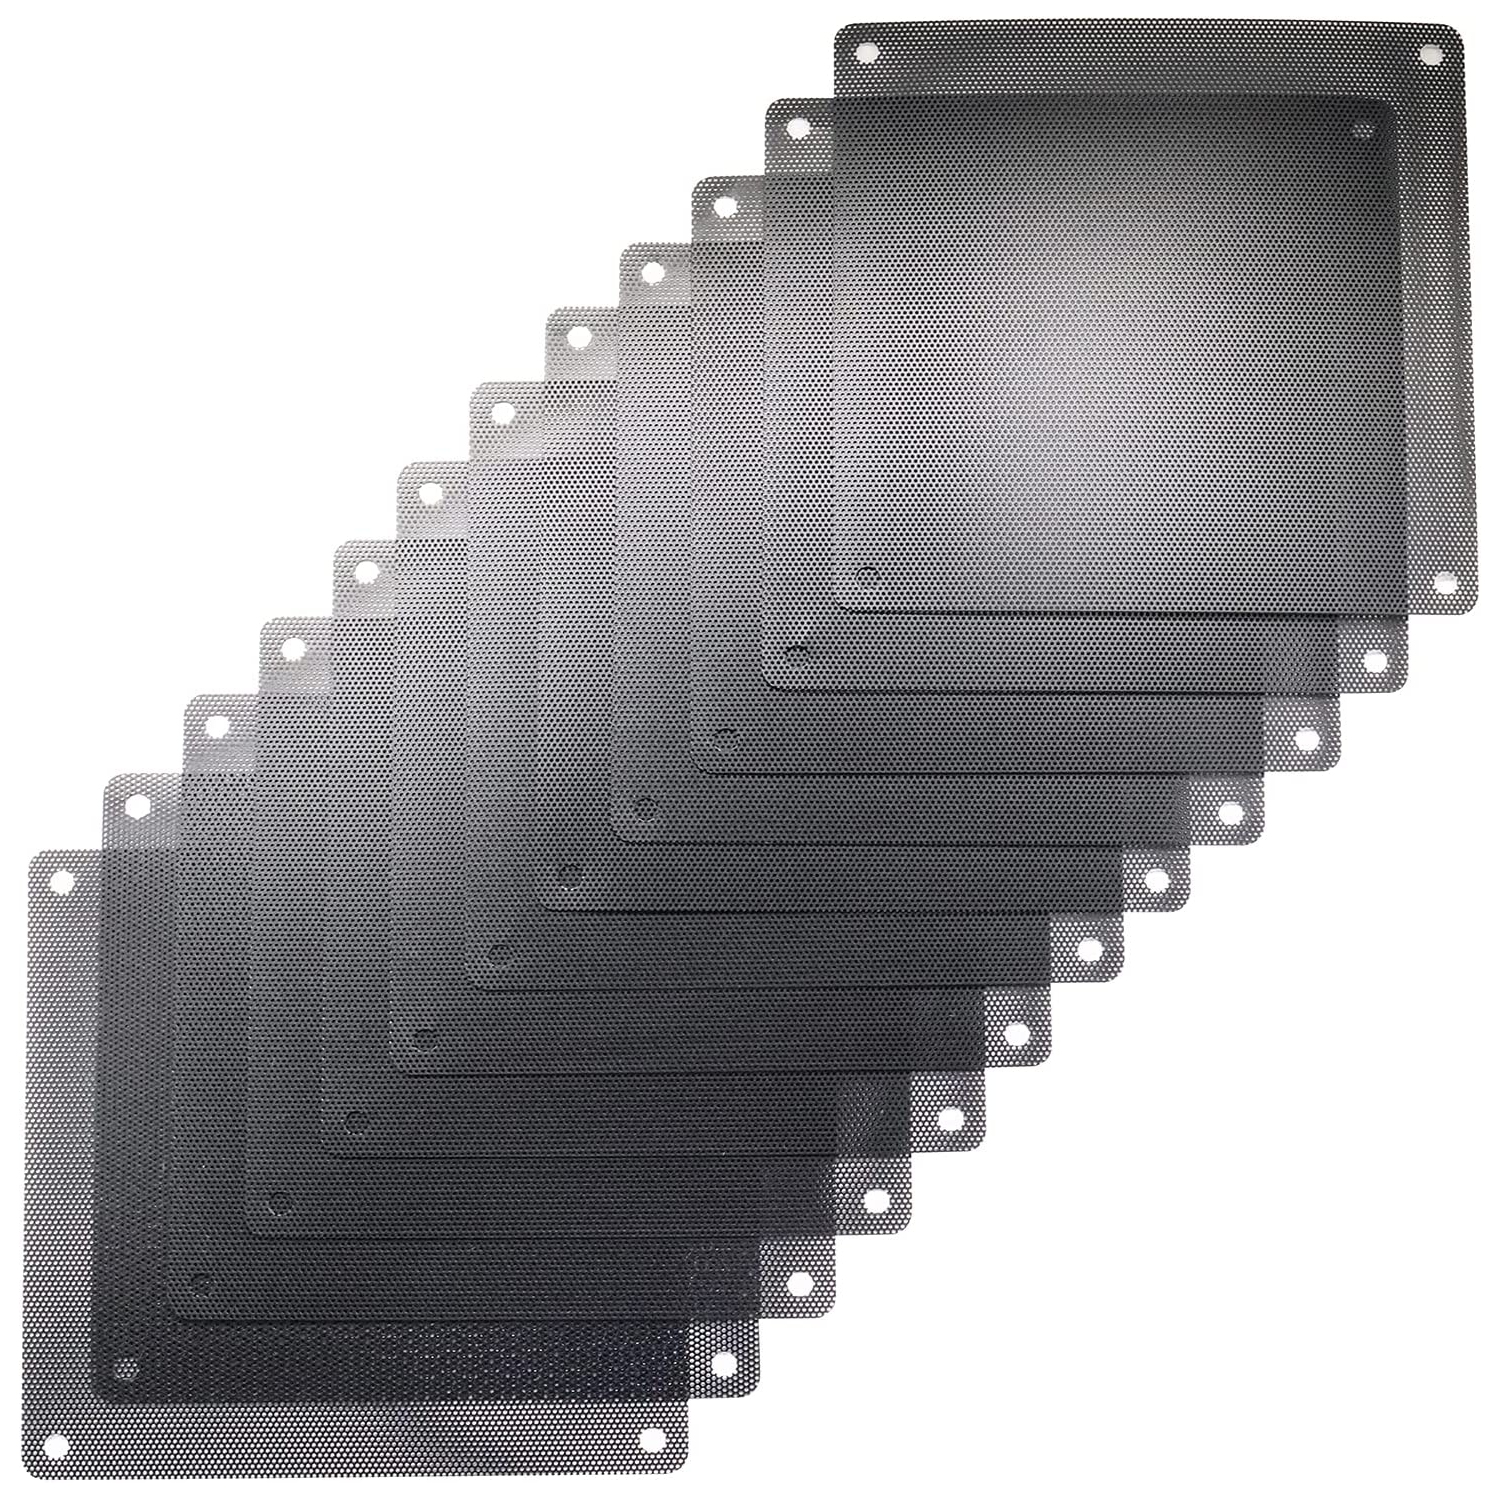 12 Pcs 120mm PVC Black PC Cooler Fan Dust Filter Dustproof Case Cover Computer Mesh